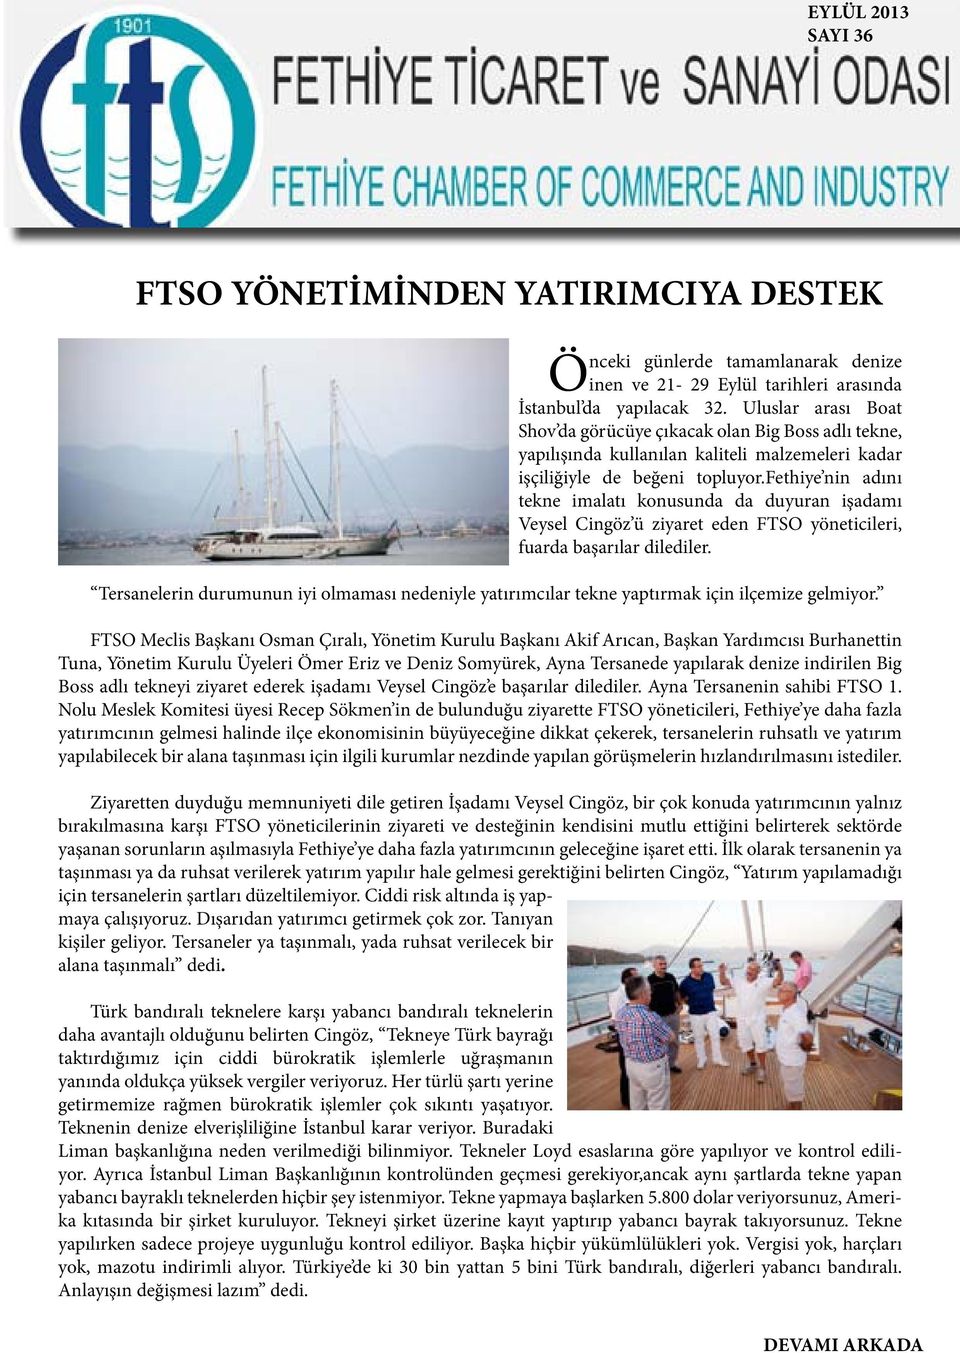 fethiye nin adını tekne imalatı konusunda da duyuran işadamı Veysel Cingöz ü ziyaret eden FTSO yöneticileri, fuarda başarılar dilediler.